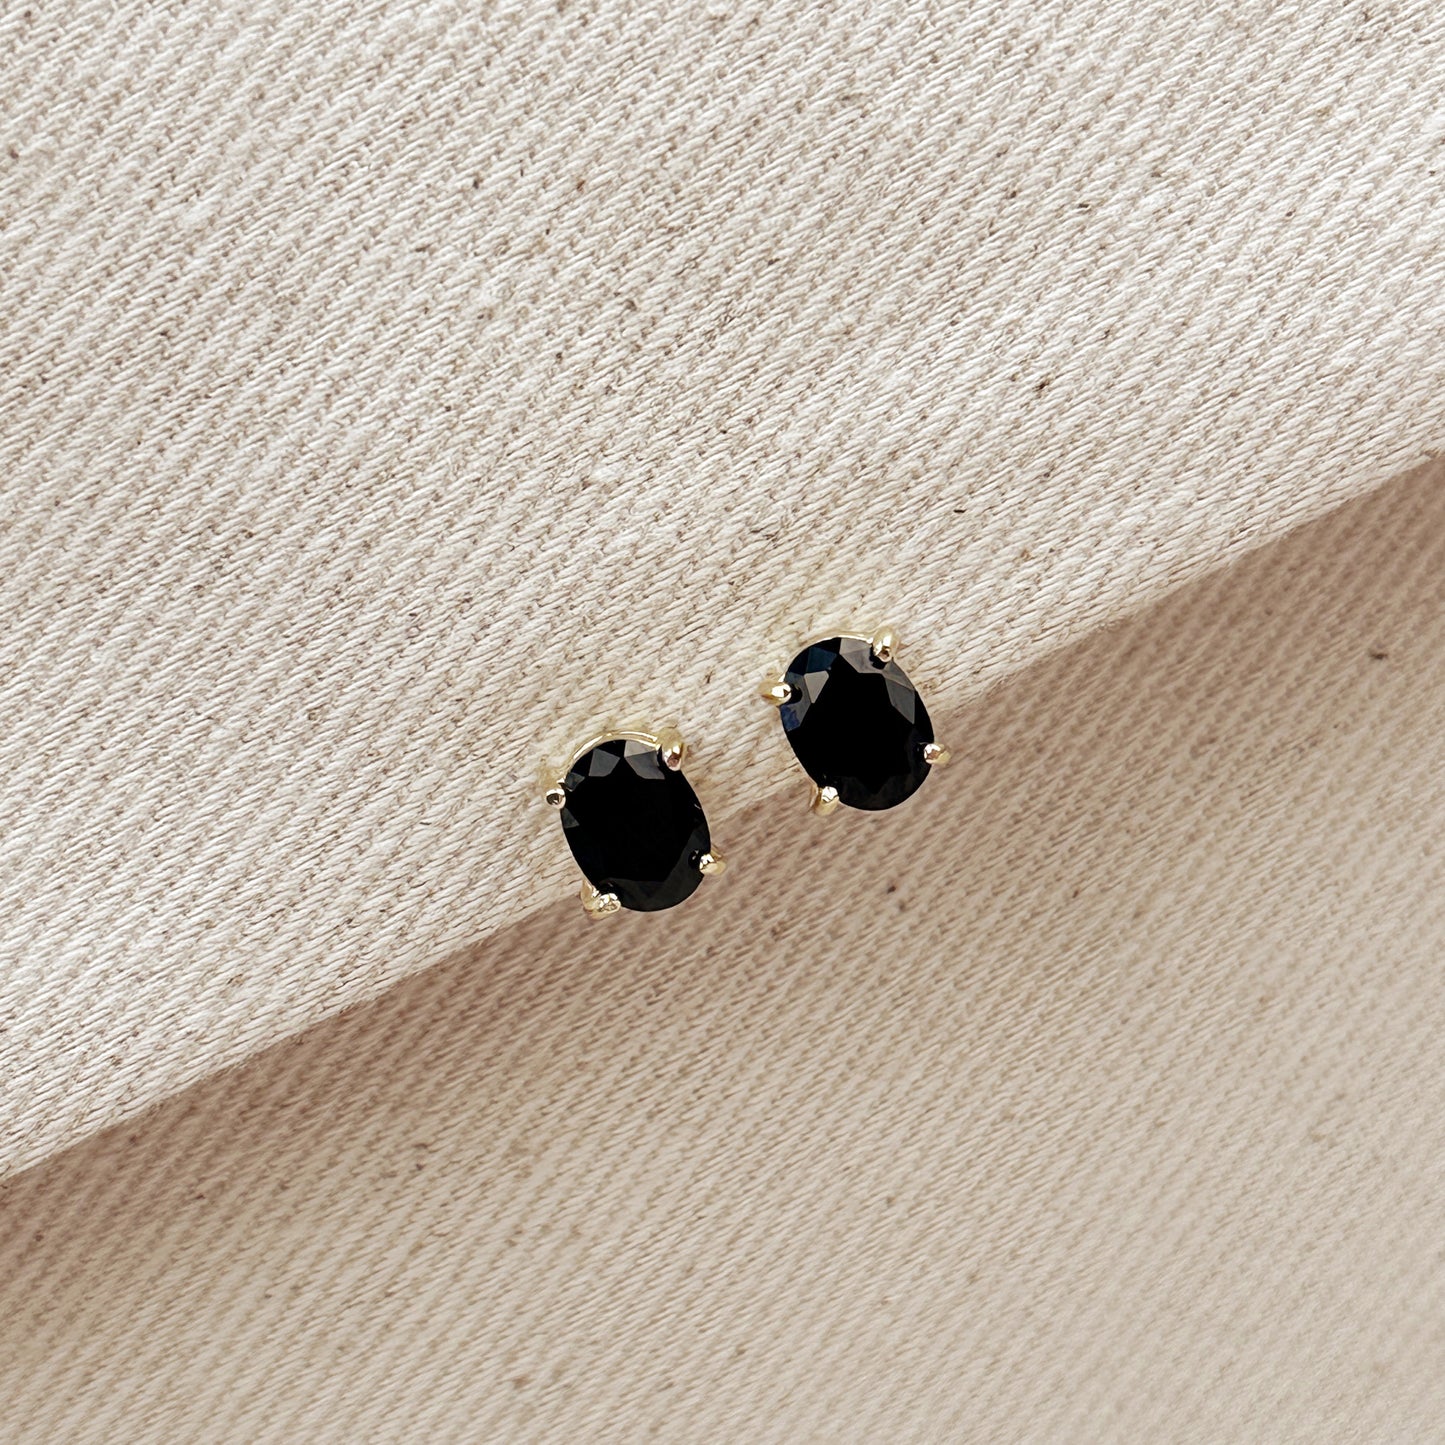 18k Gold Filled Oval Black Cubic Zirconia Stud Earrings